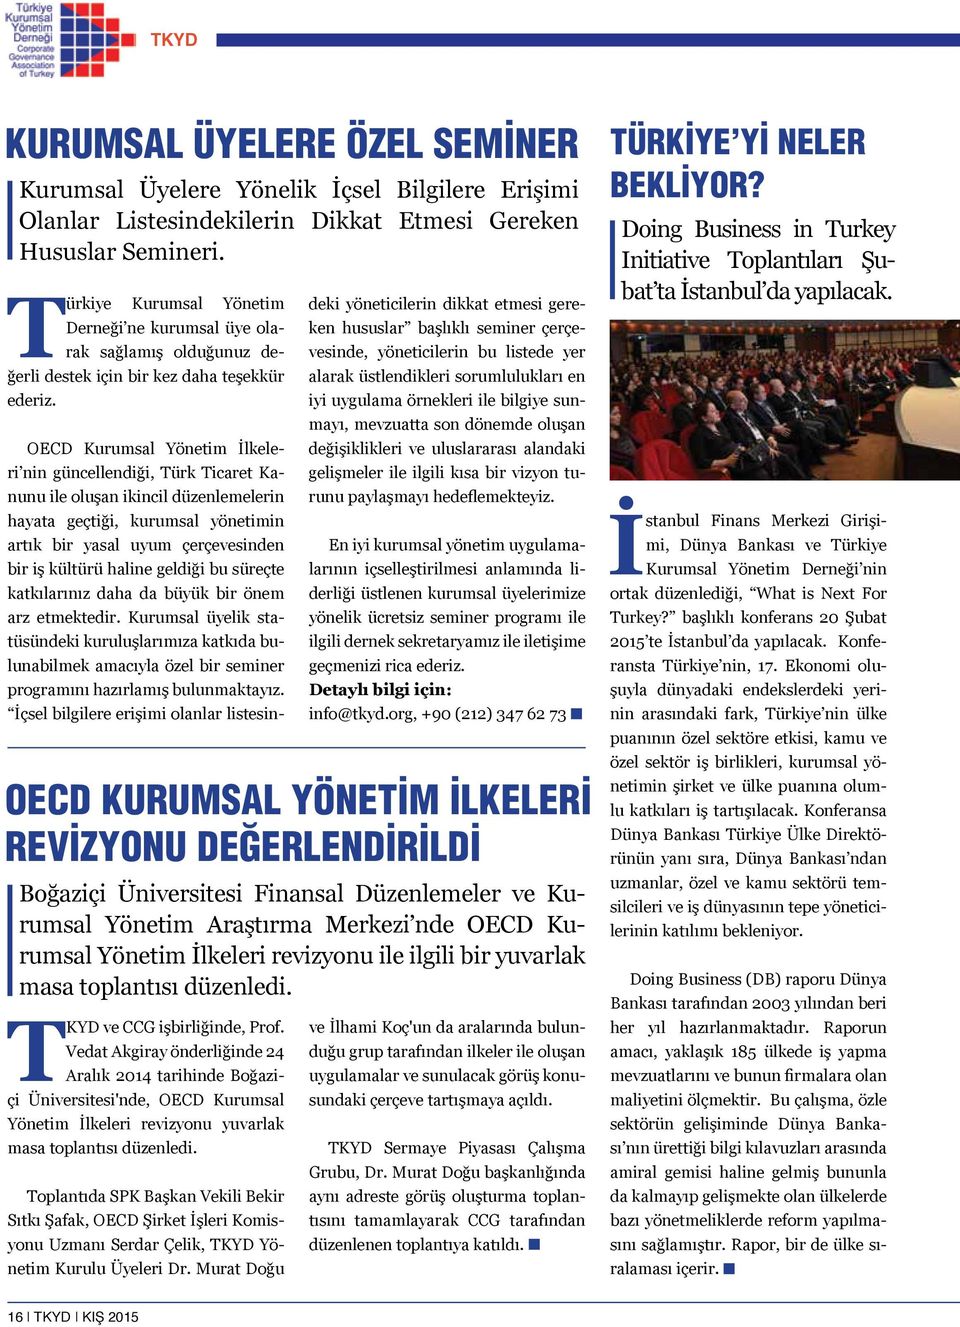 OECD Kurumsal Yönetim İlkeleri nin güncellendiği, Türk Ticaret Kanunu ile oluşan ikincil düzenlemelerin hayata geçtiği, kurumsal yönetimin artık bir yasal uyum çerçevesinden bir iş kültürü haline